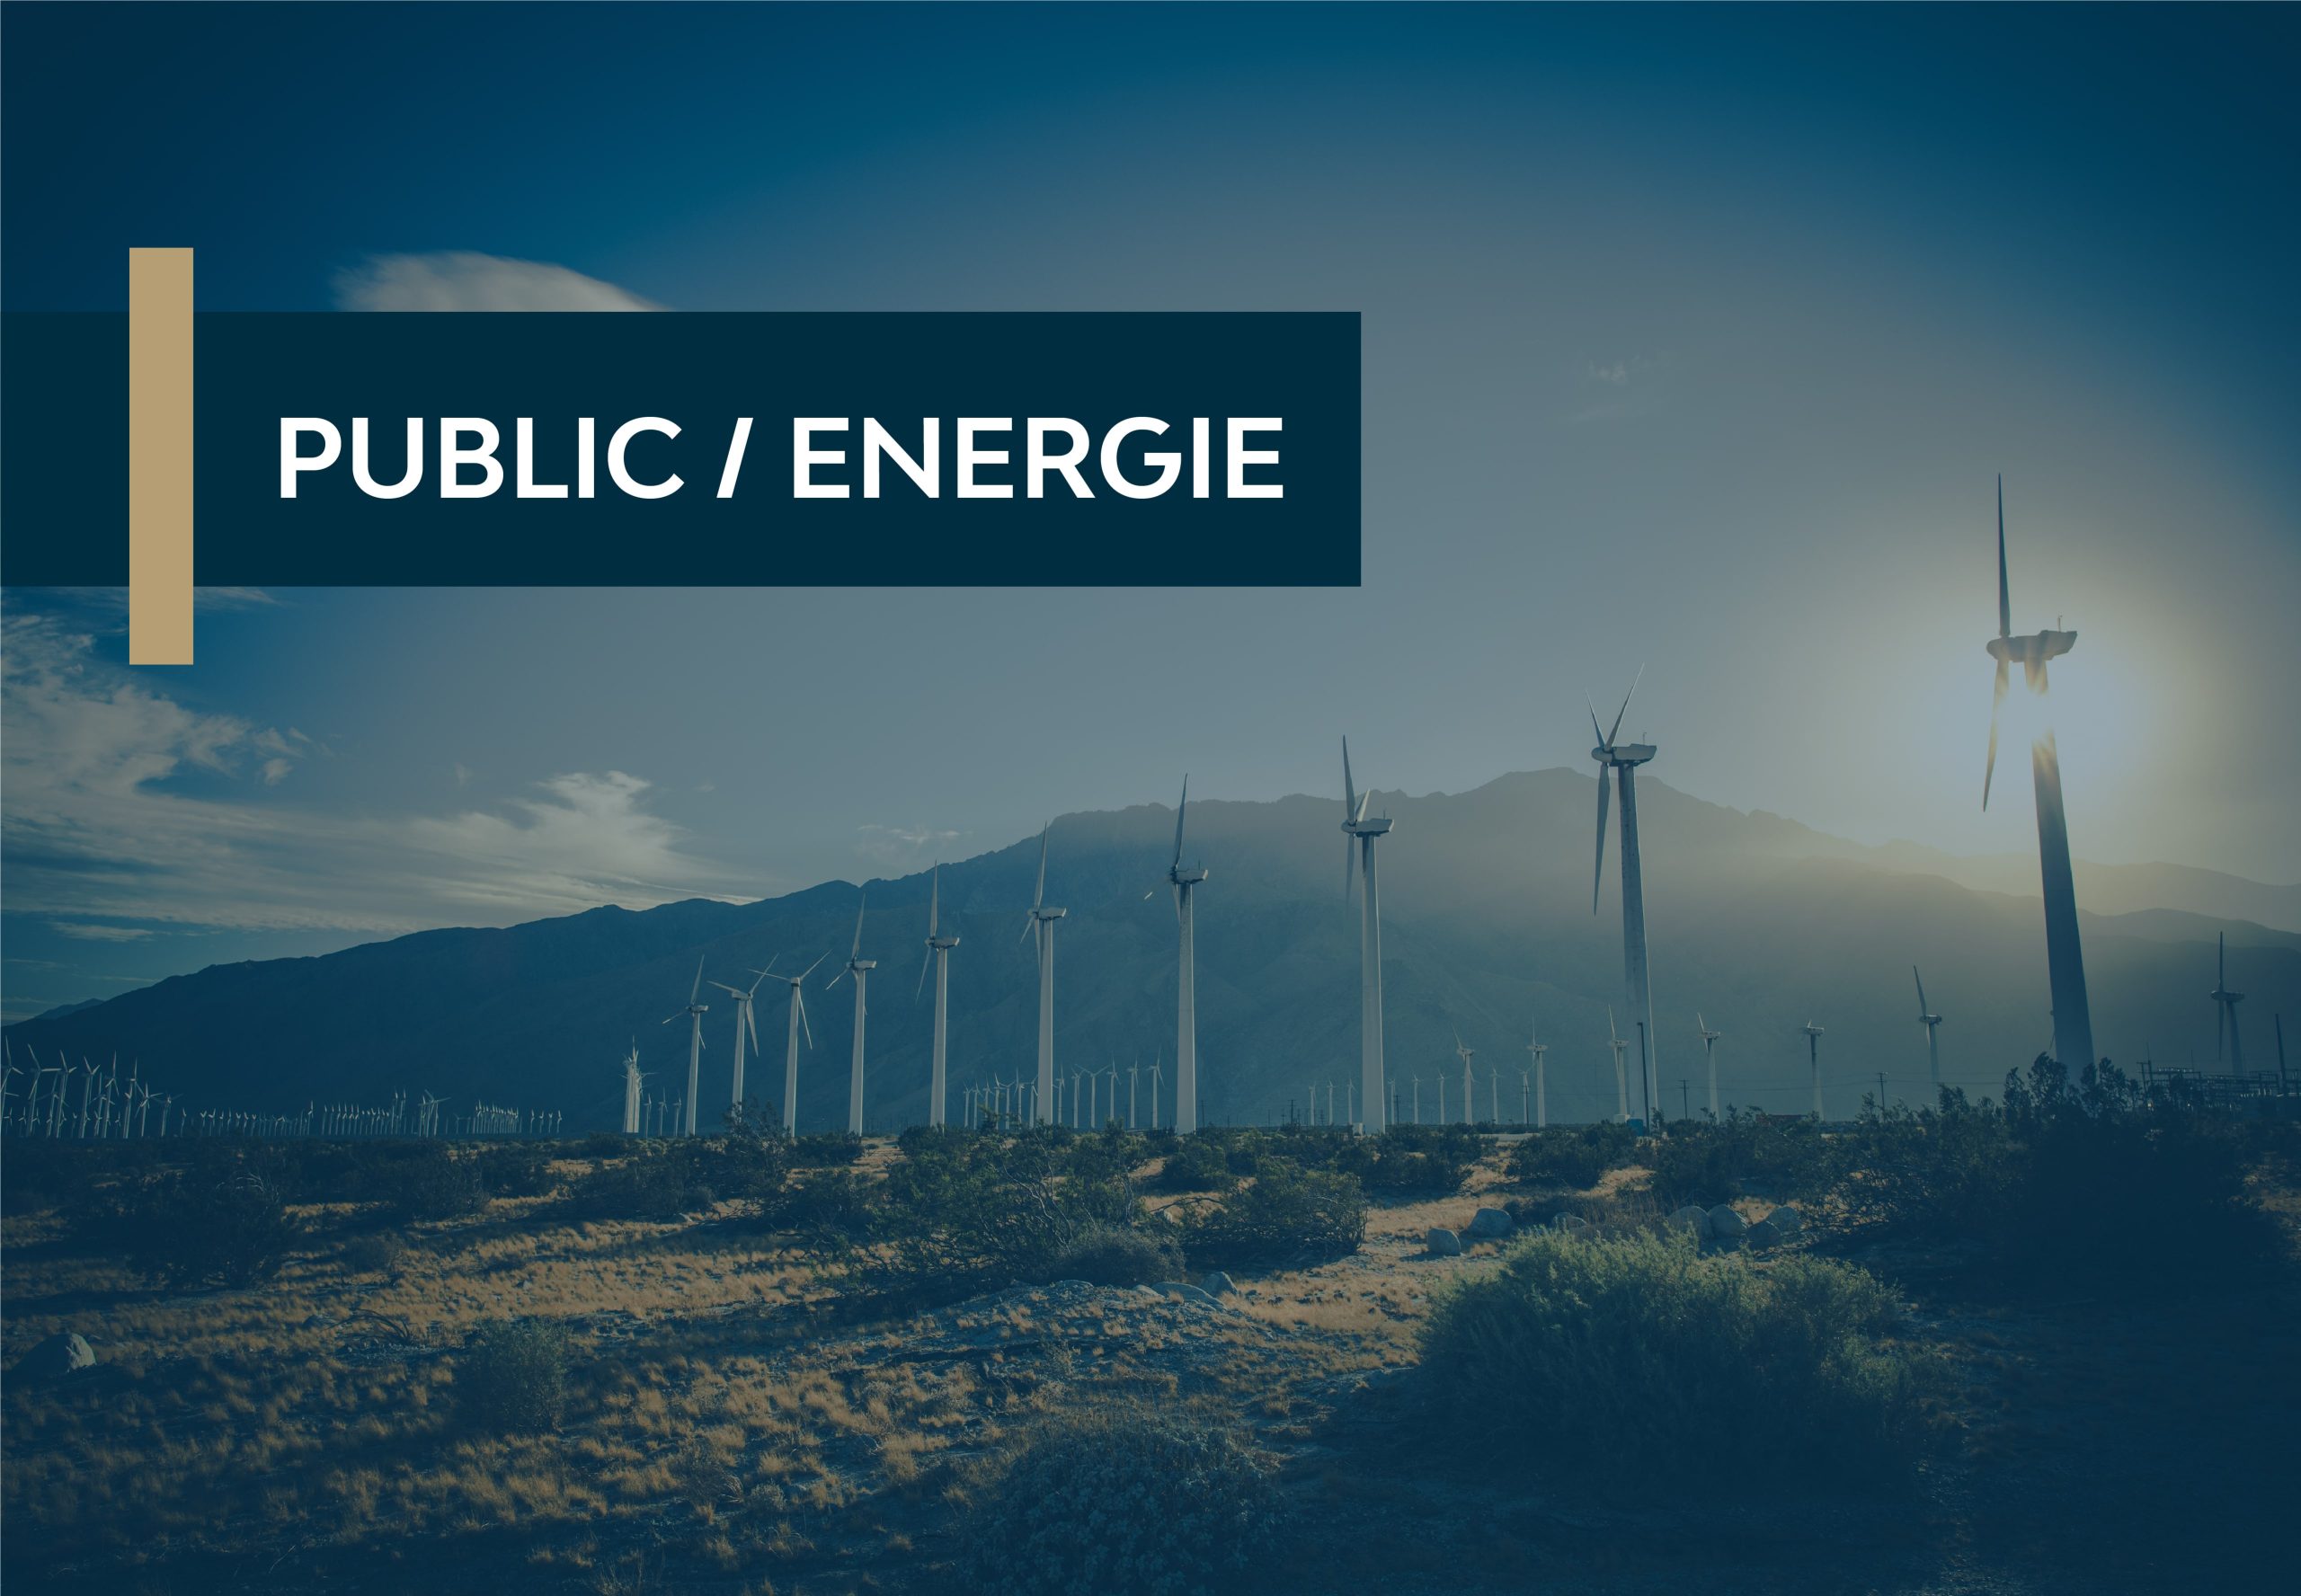 Public / Energie